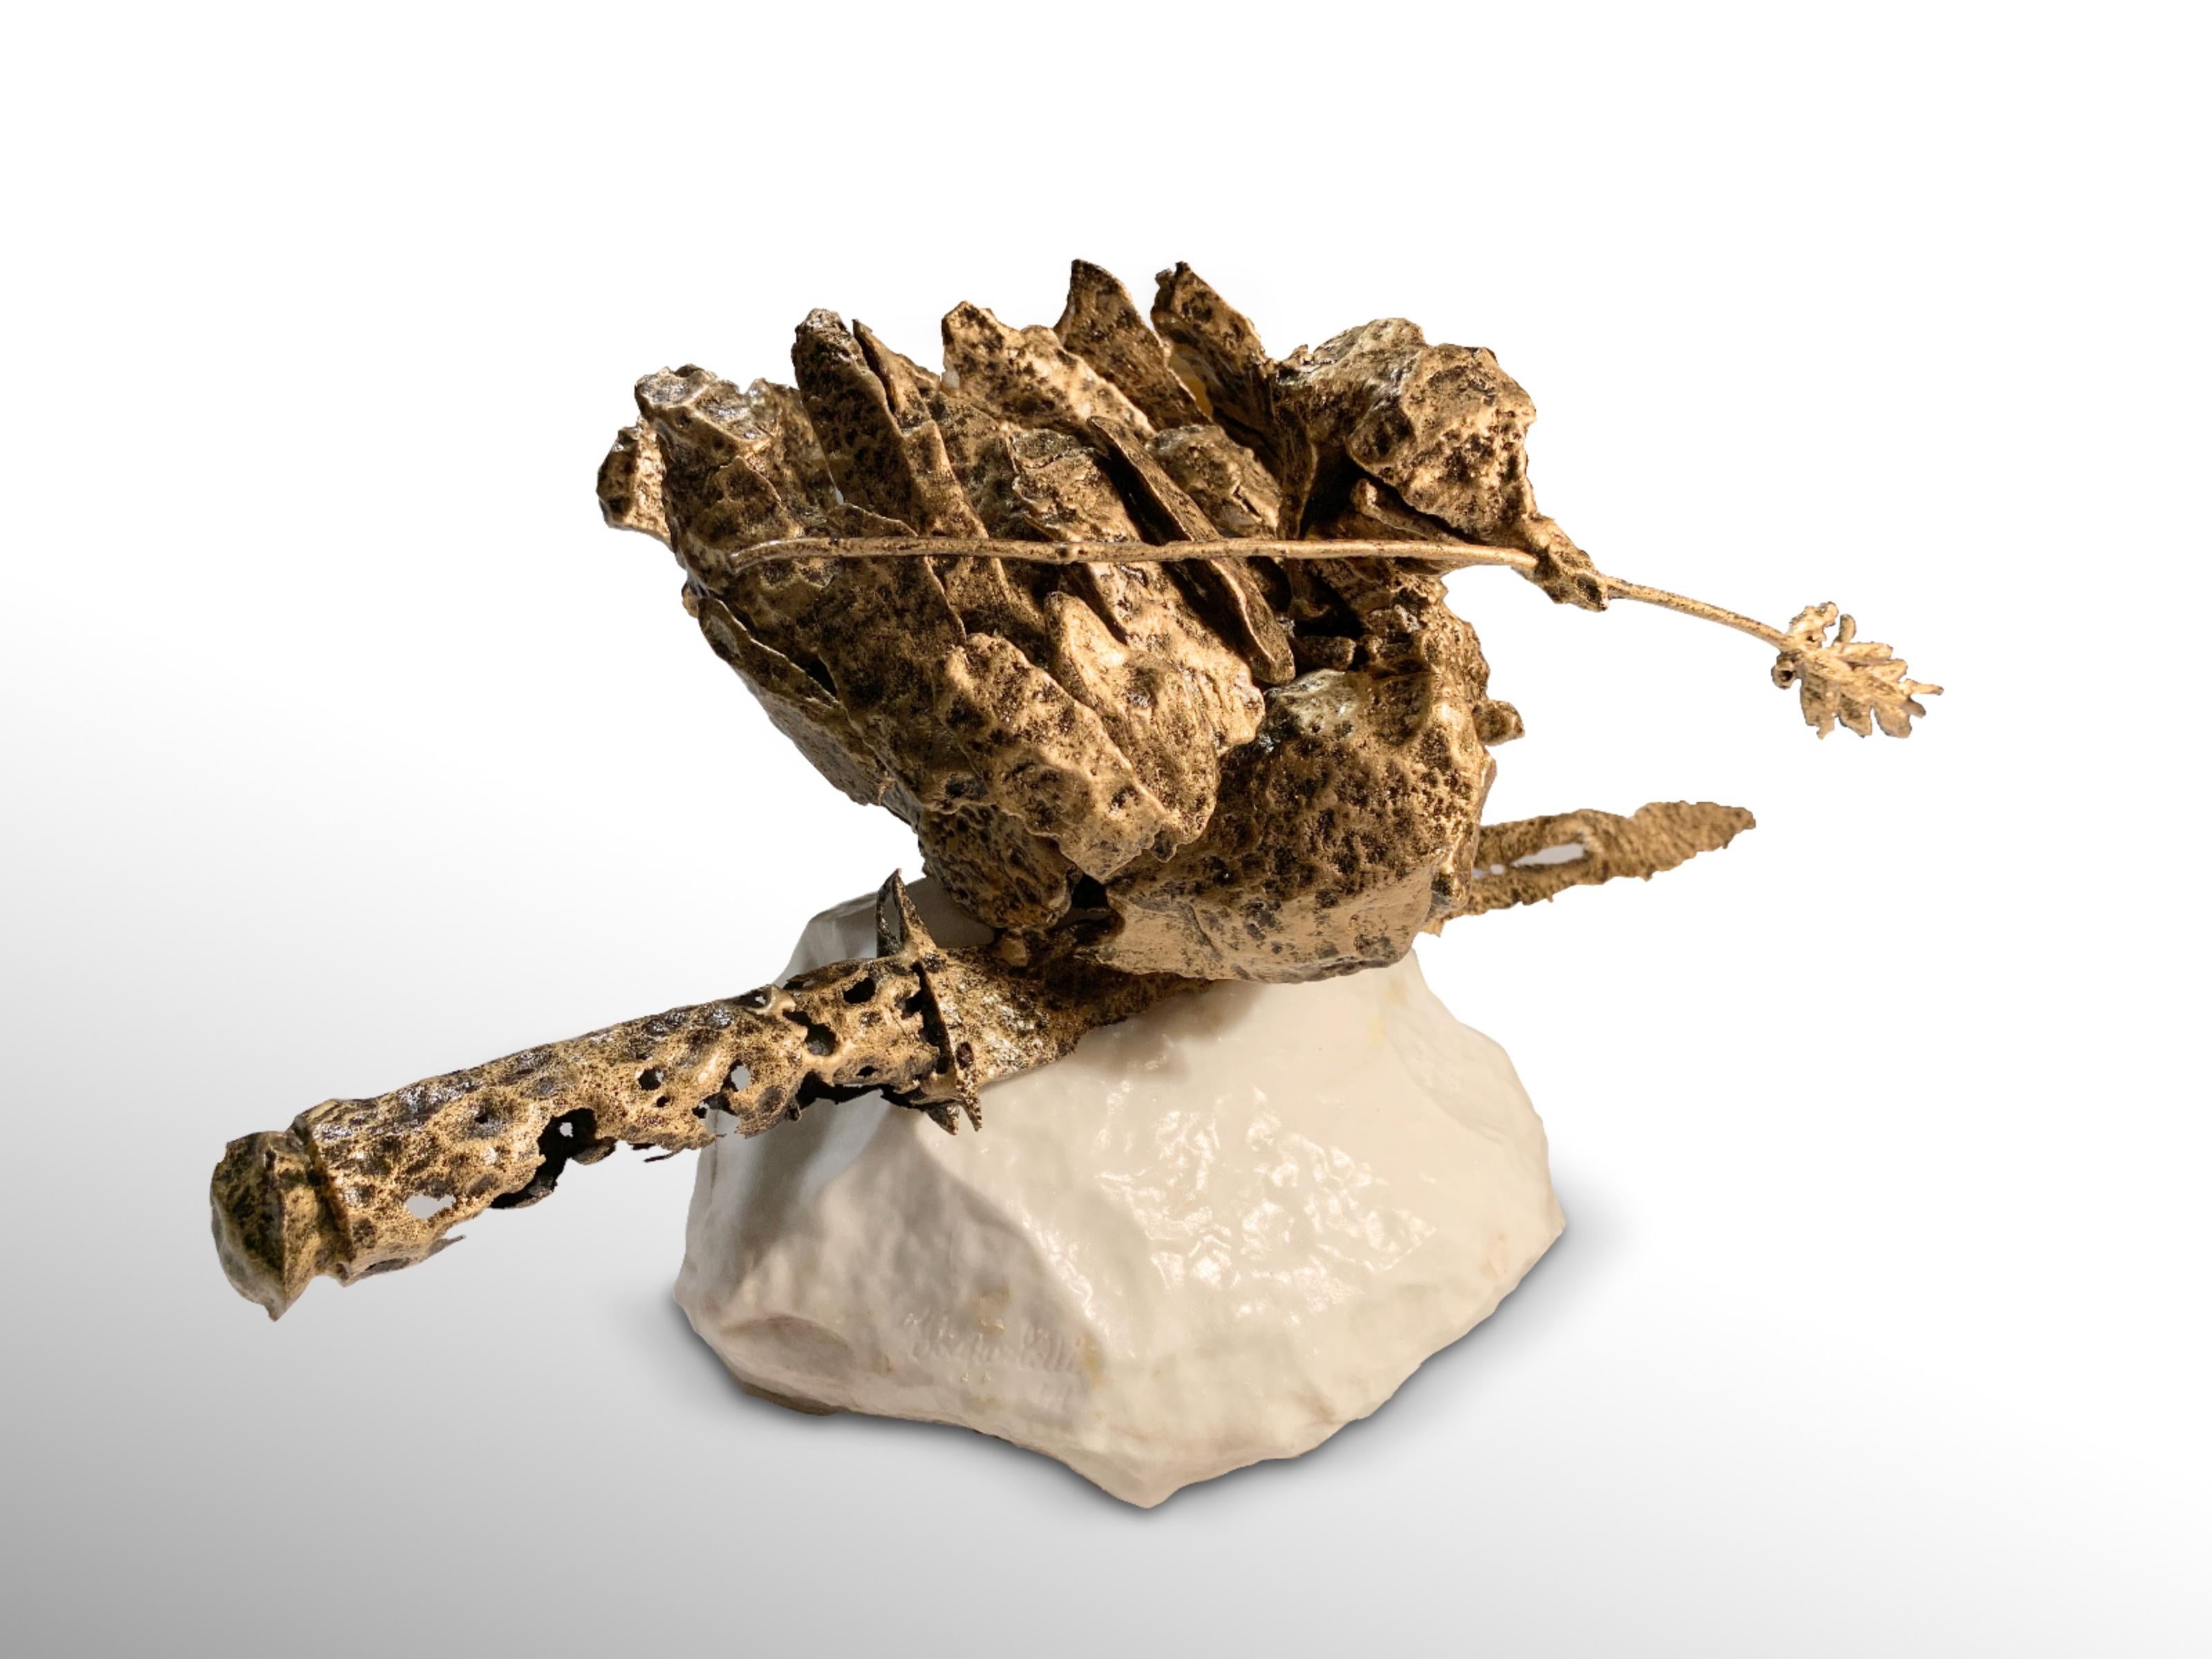 Dove -  Metallic Sculpture by Fero Carletti -  2020